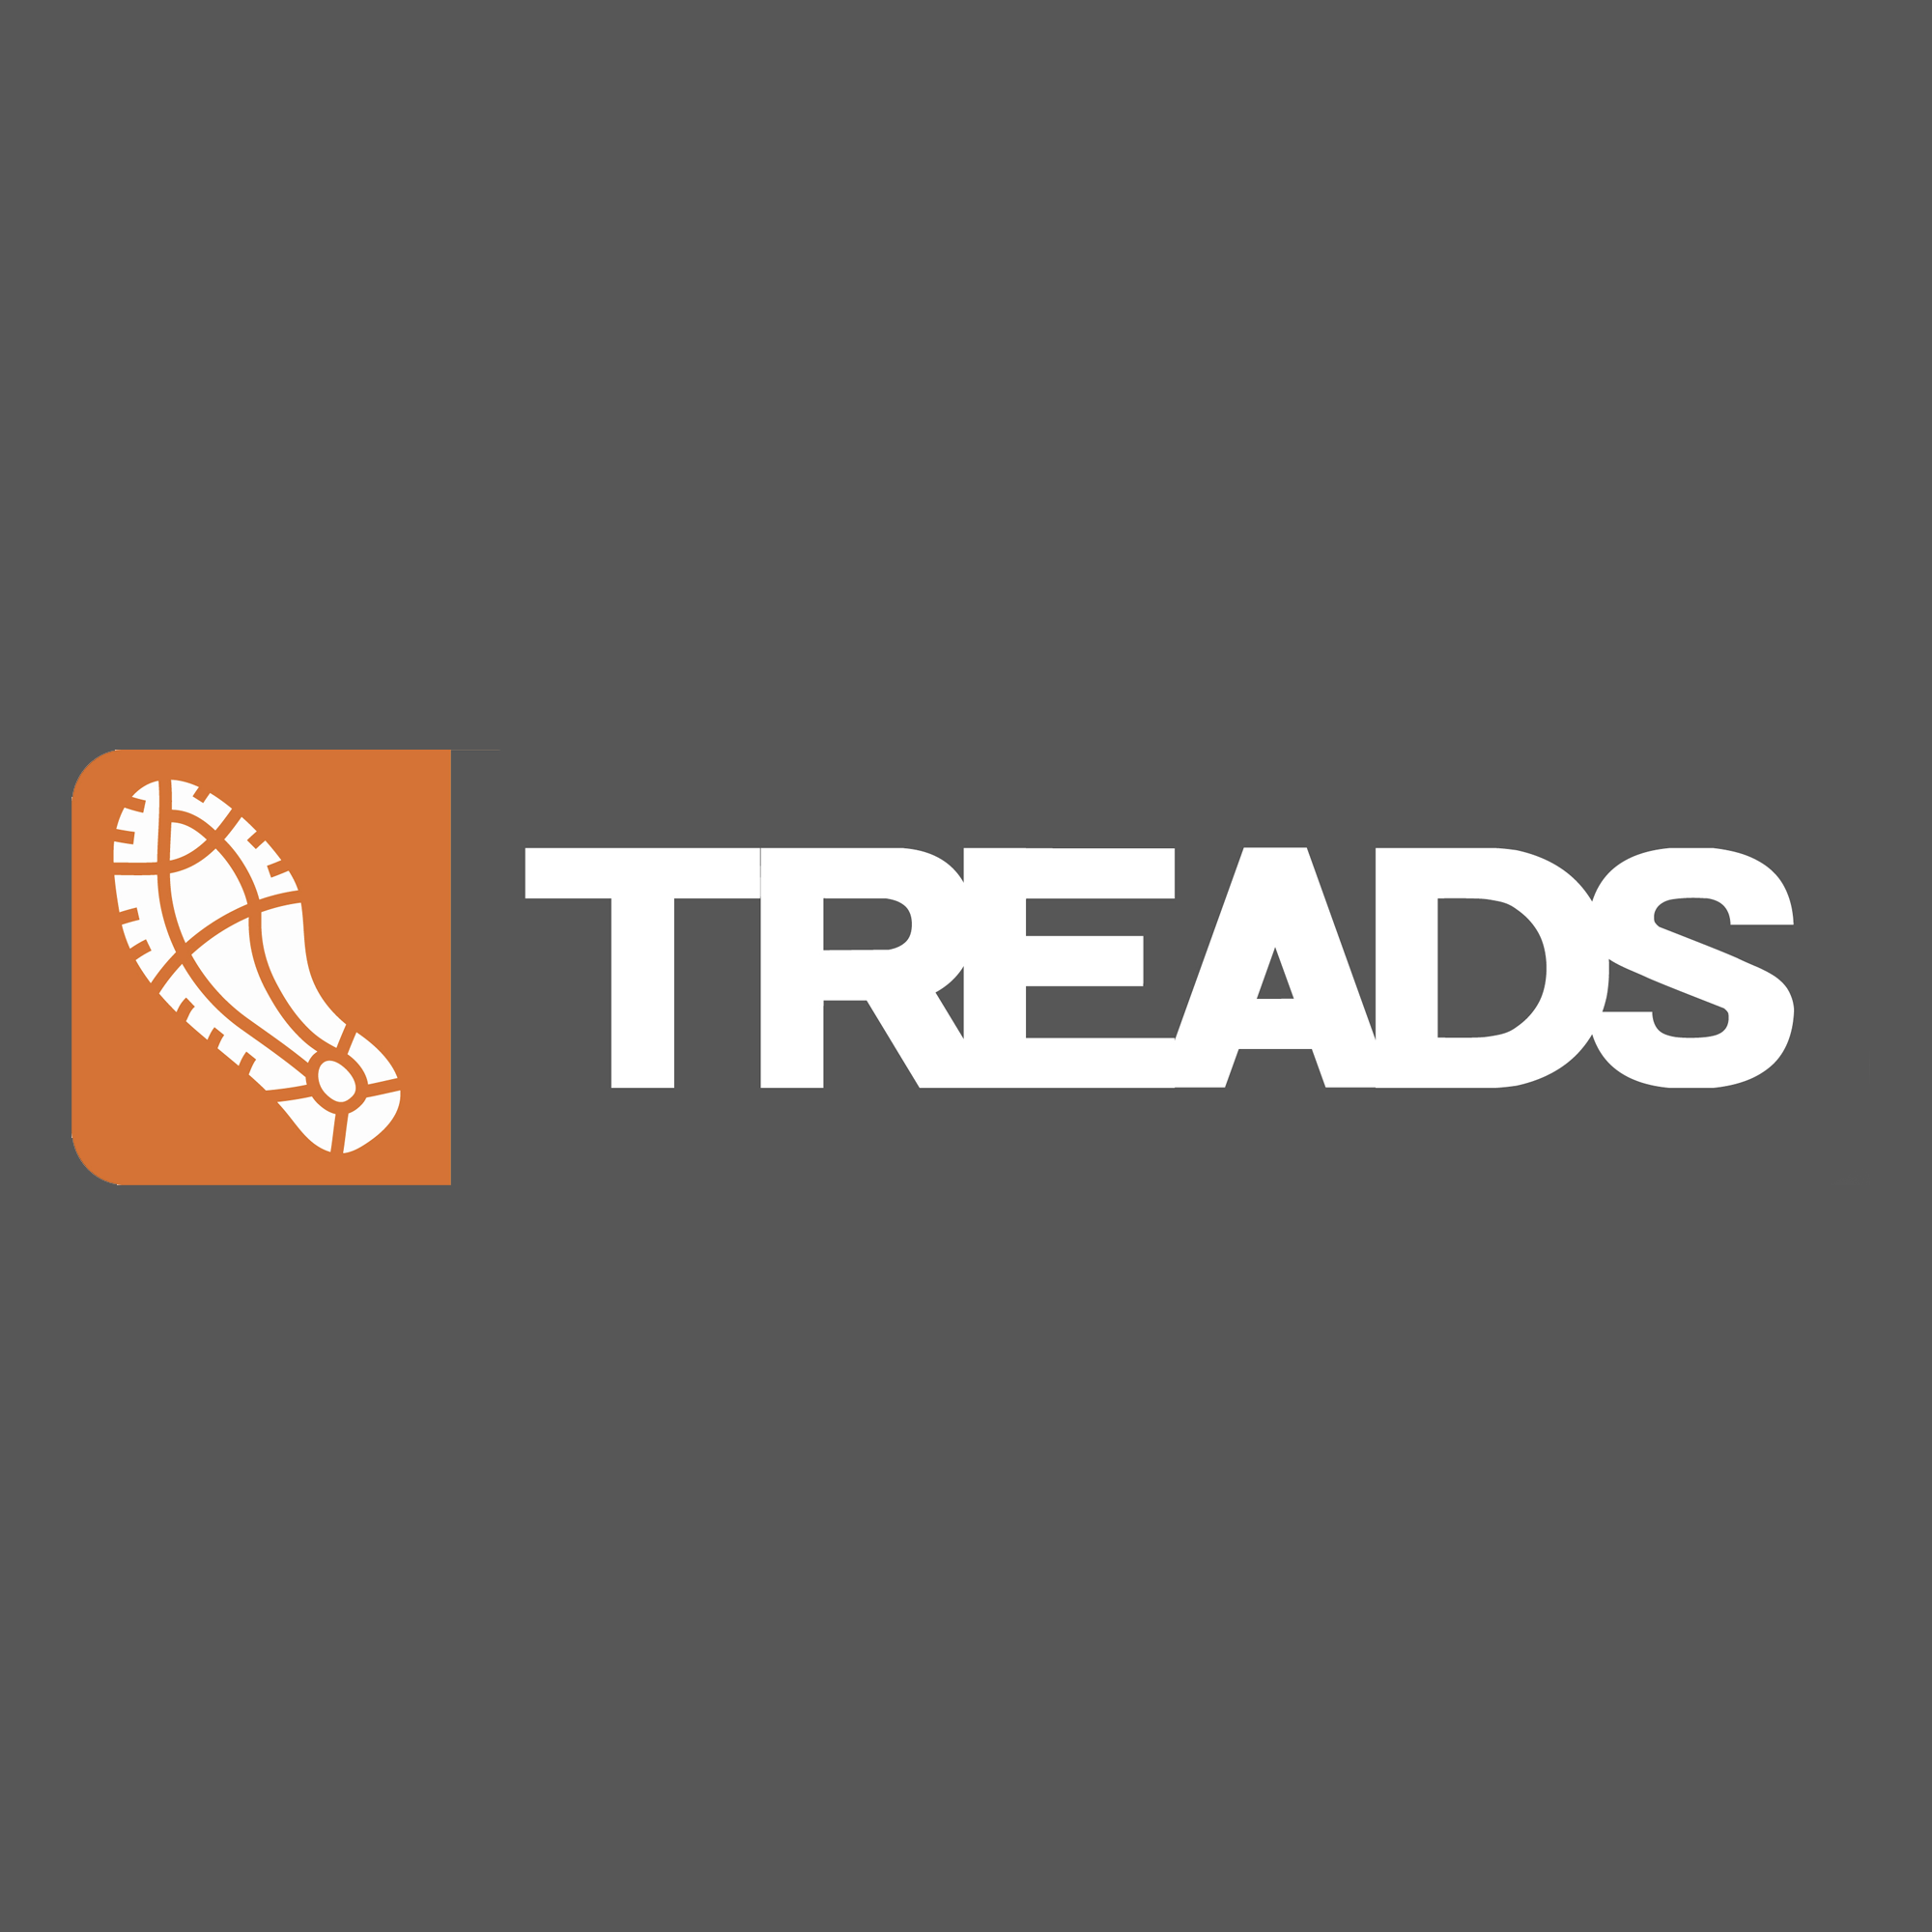 Company logo of Treads